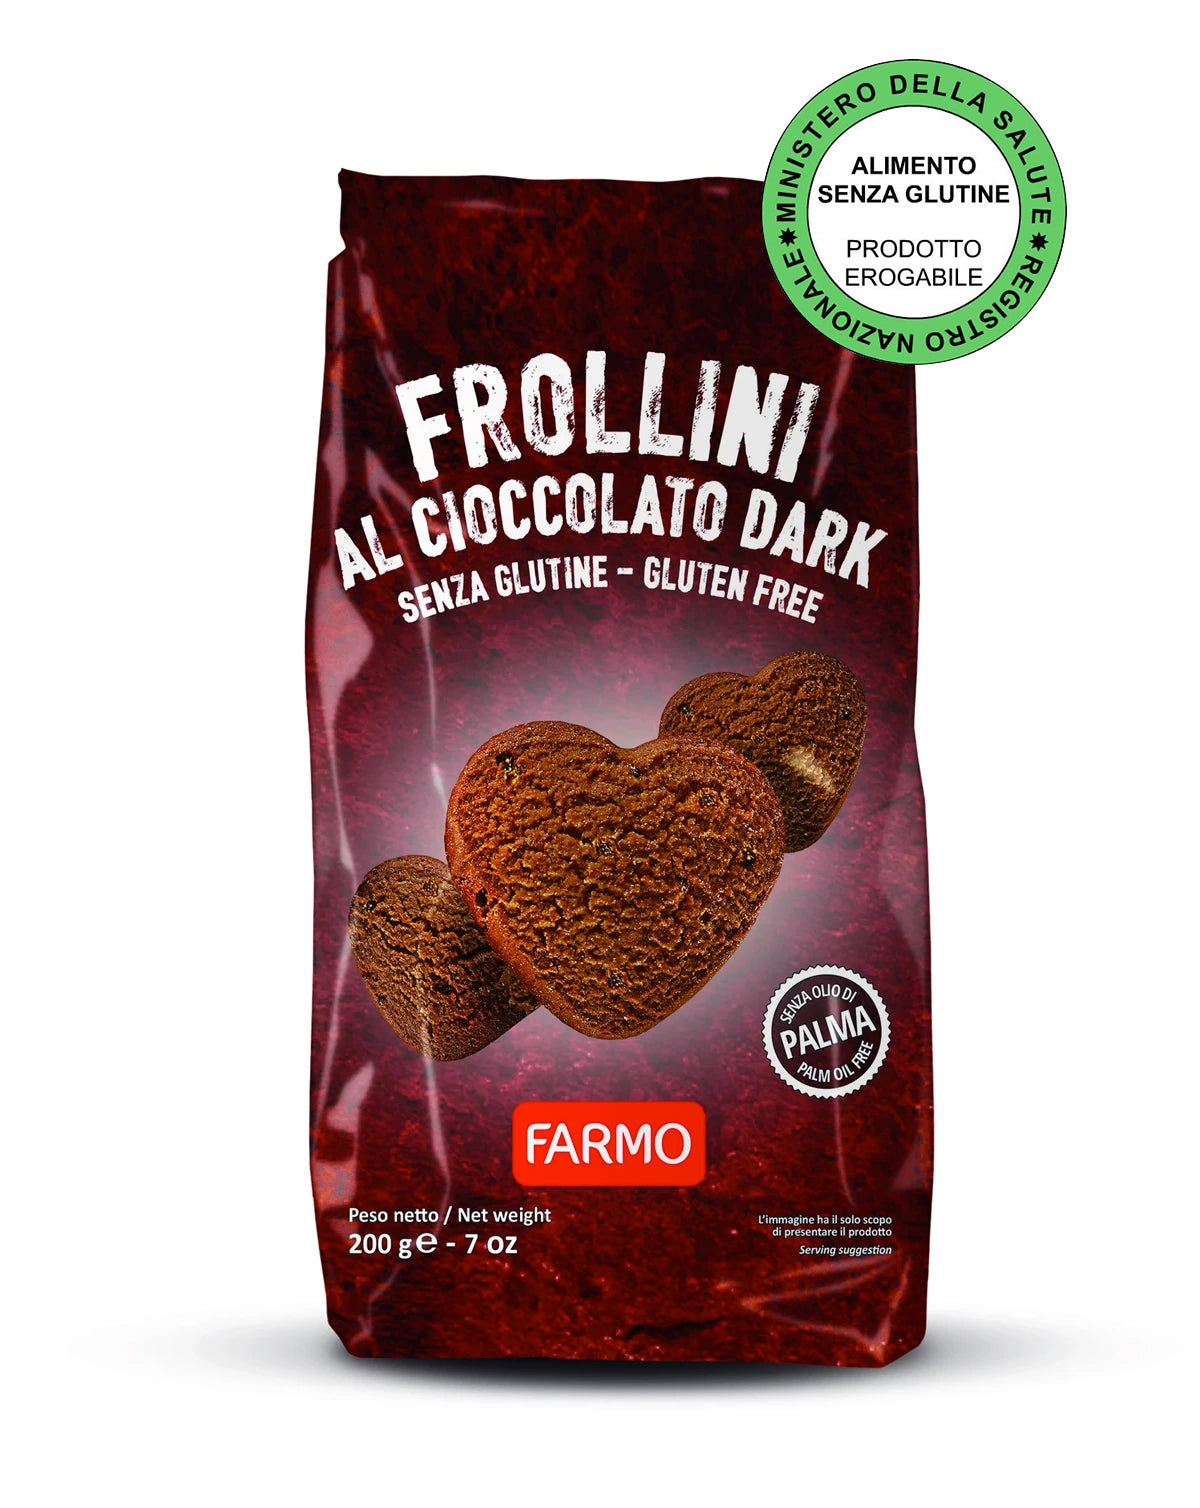 Frollini Cioccolato Dark - Farmo - Eat a better life